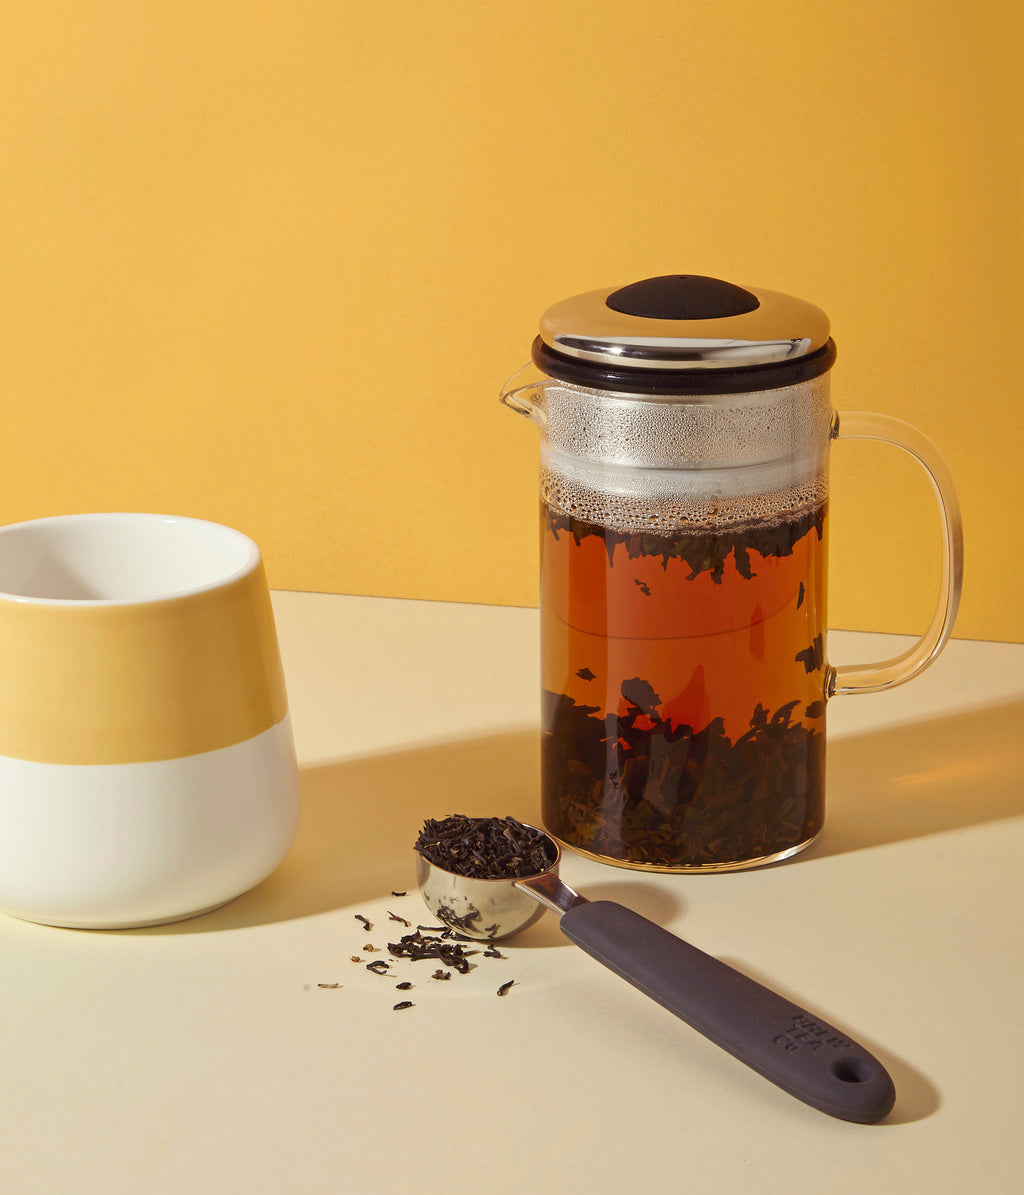 Darjeeling - Loose Leaf Tea